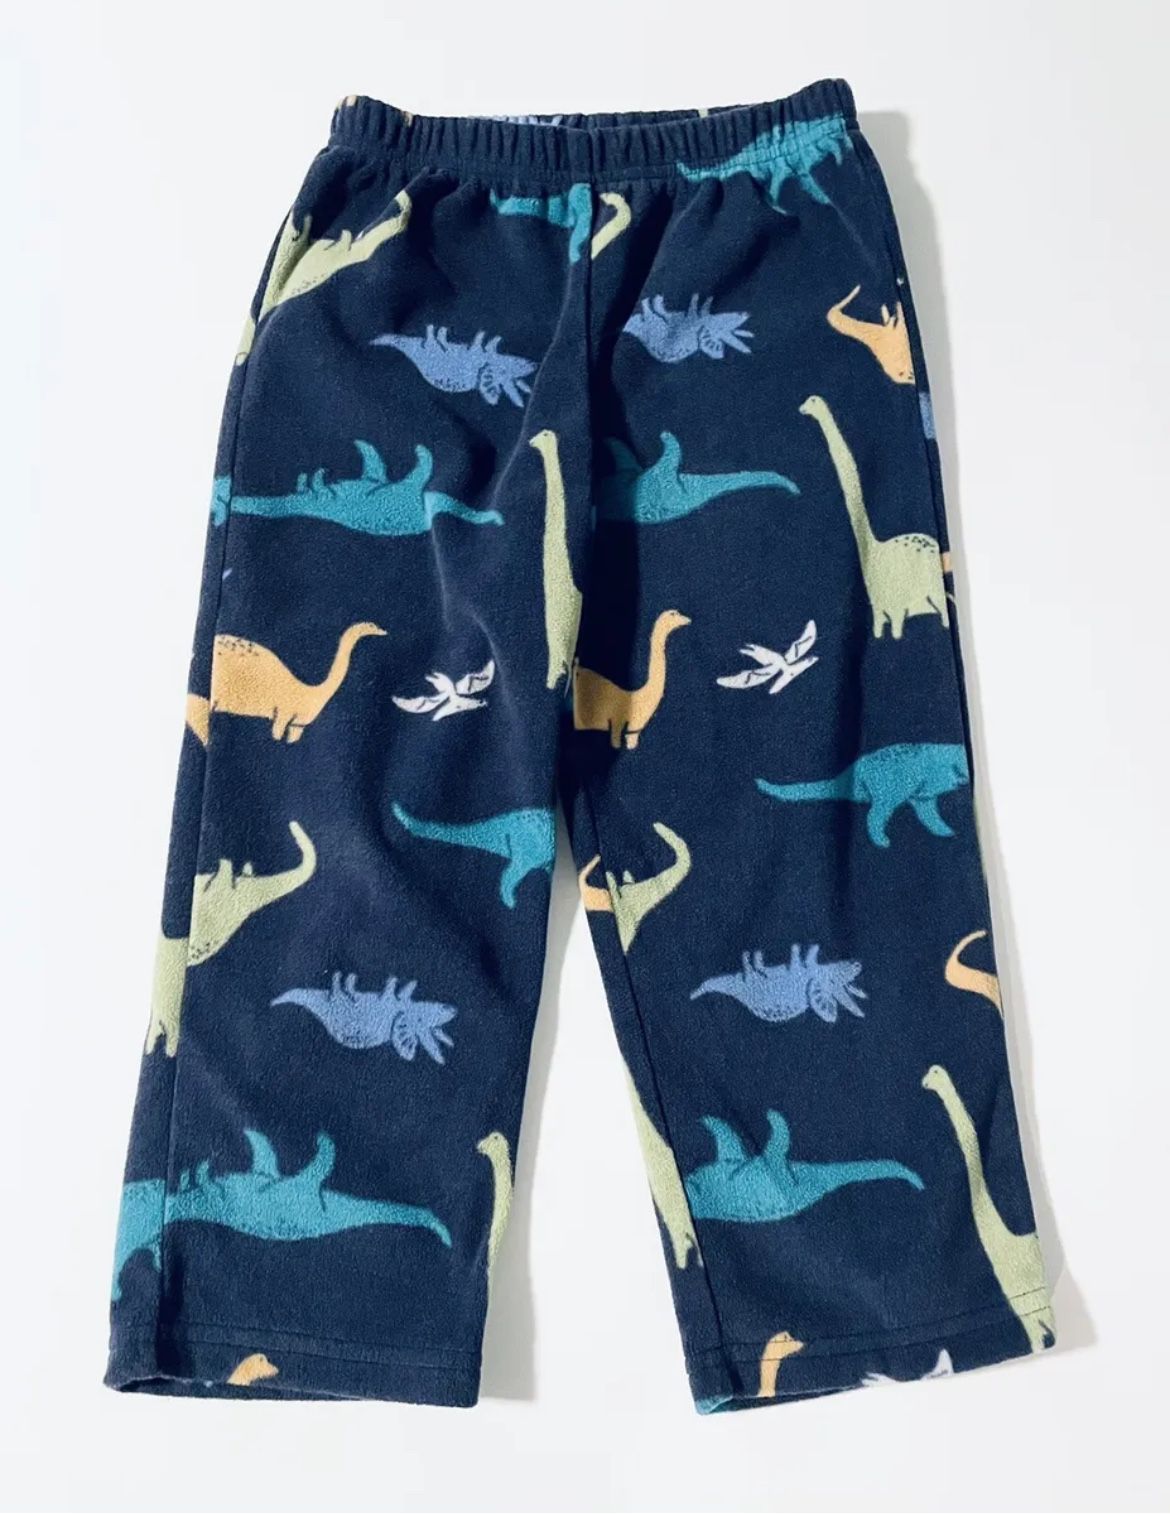 Carter’s Dinosaur Flannel Pajama Pant Boys 4T, SMOKE FREE!